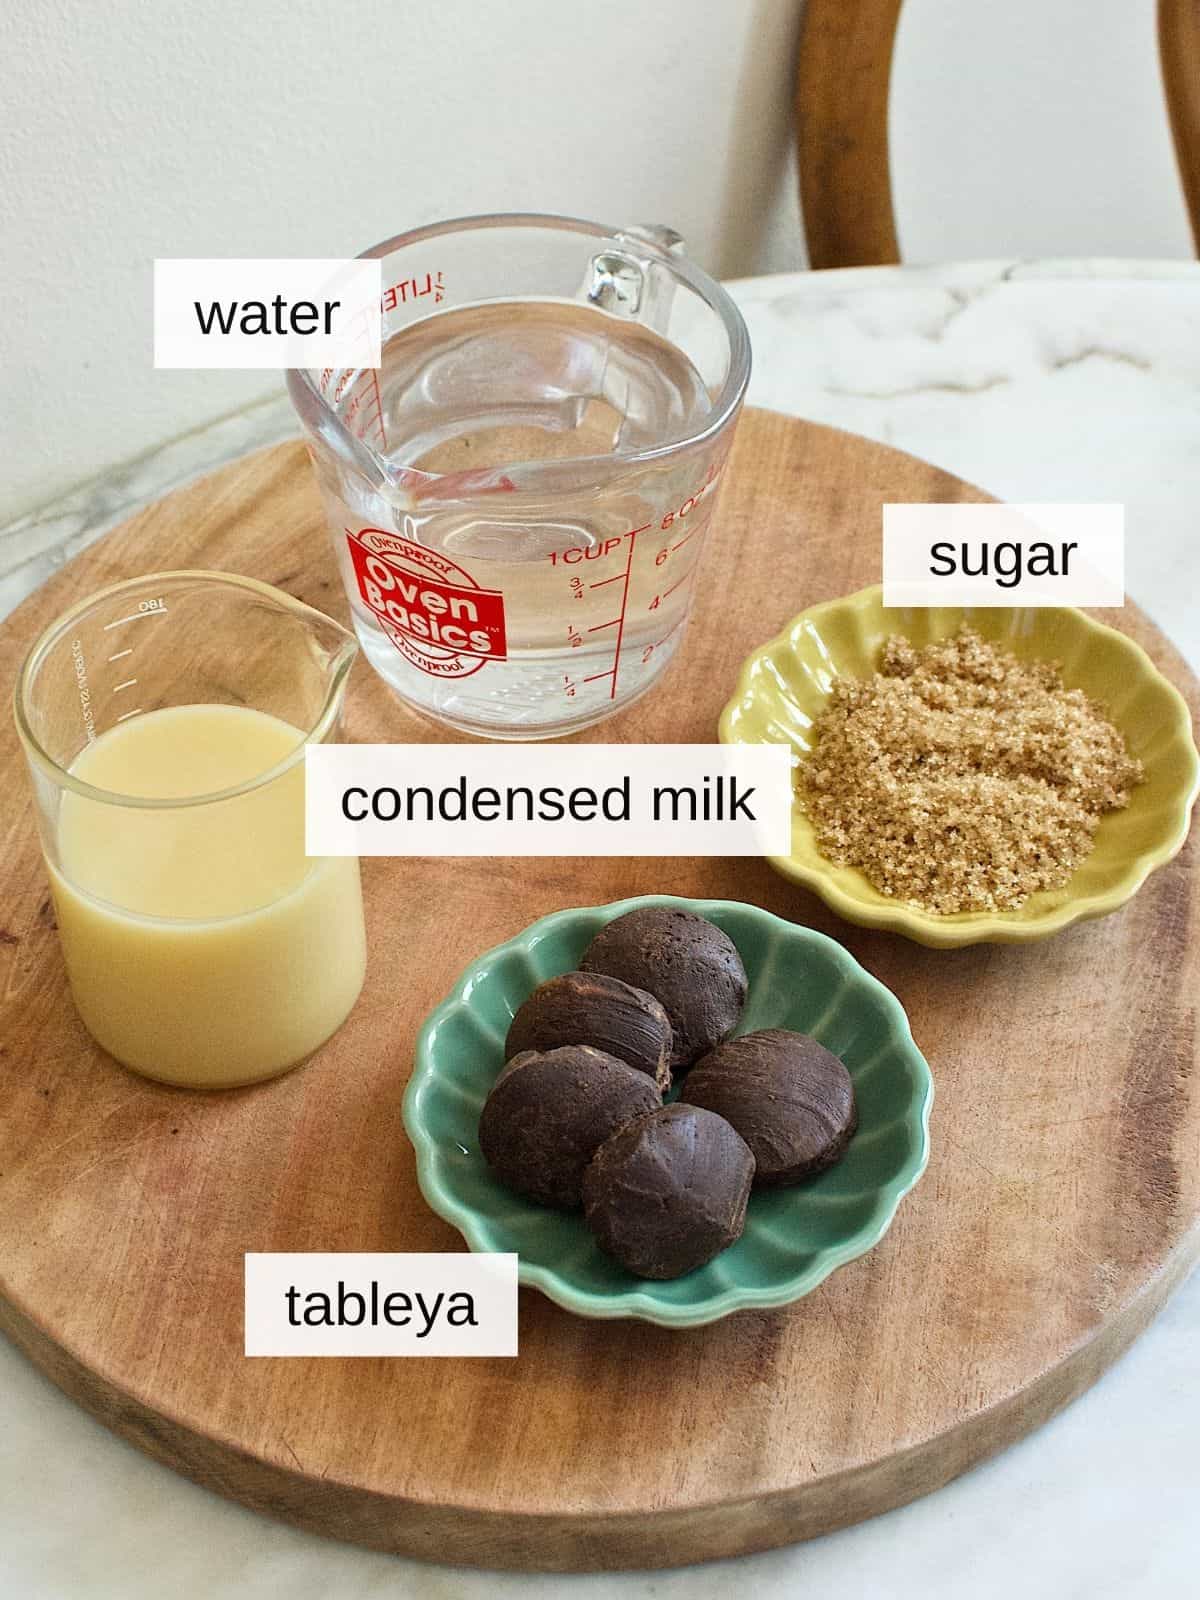 ingredients for sikwate recipe, including water, sugar, condensed milk, and tableya.